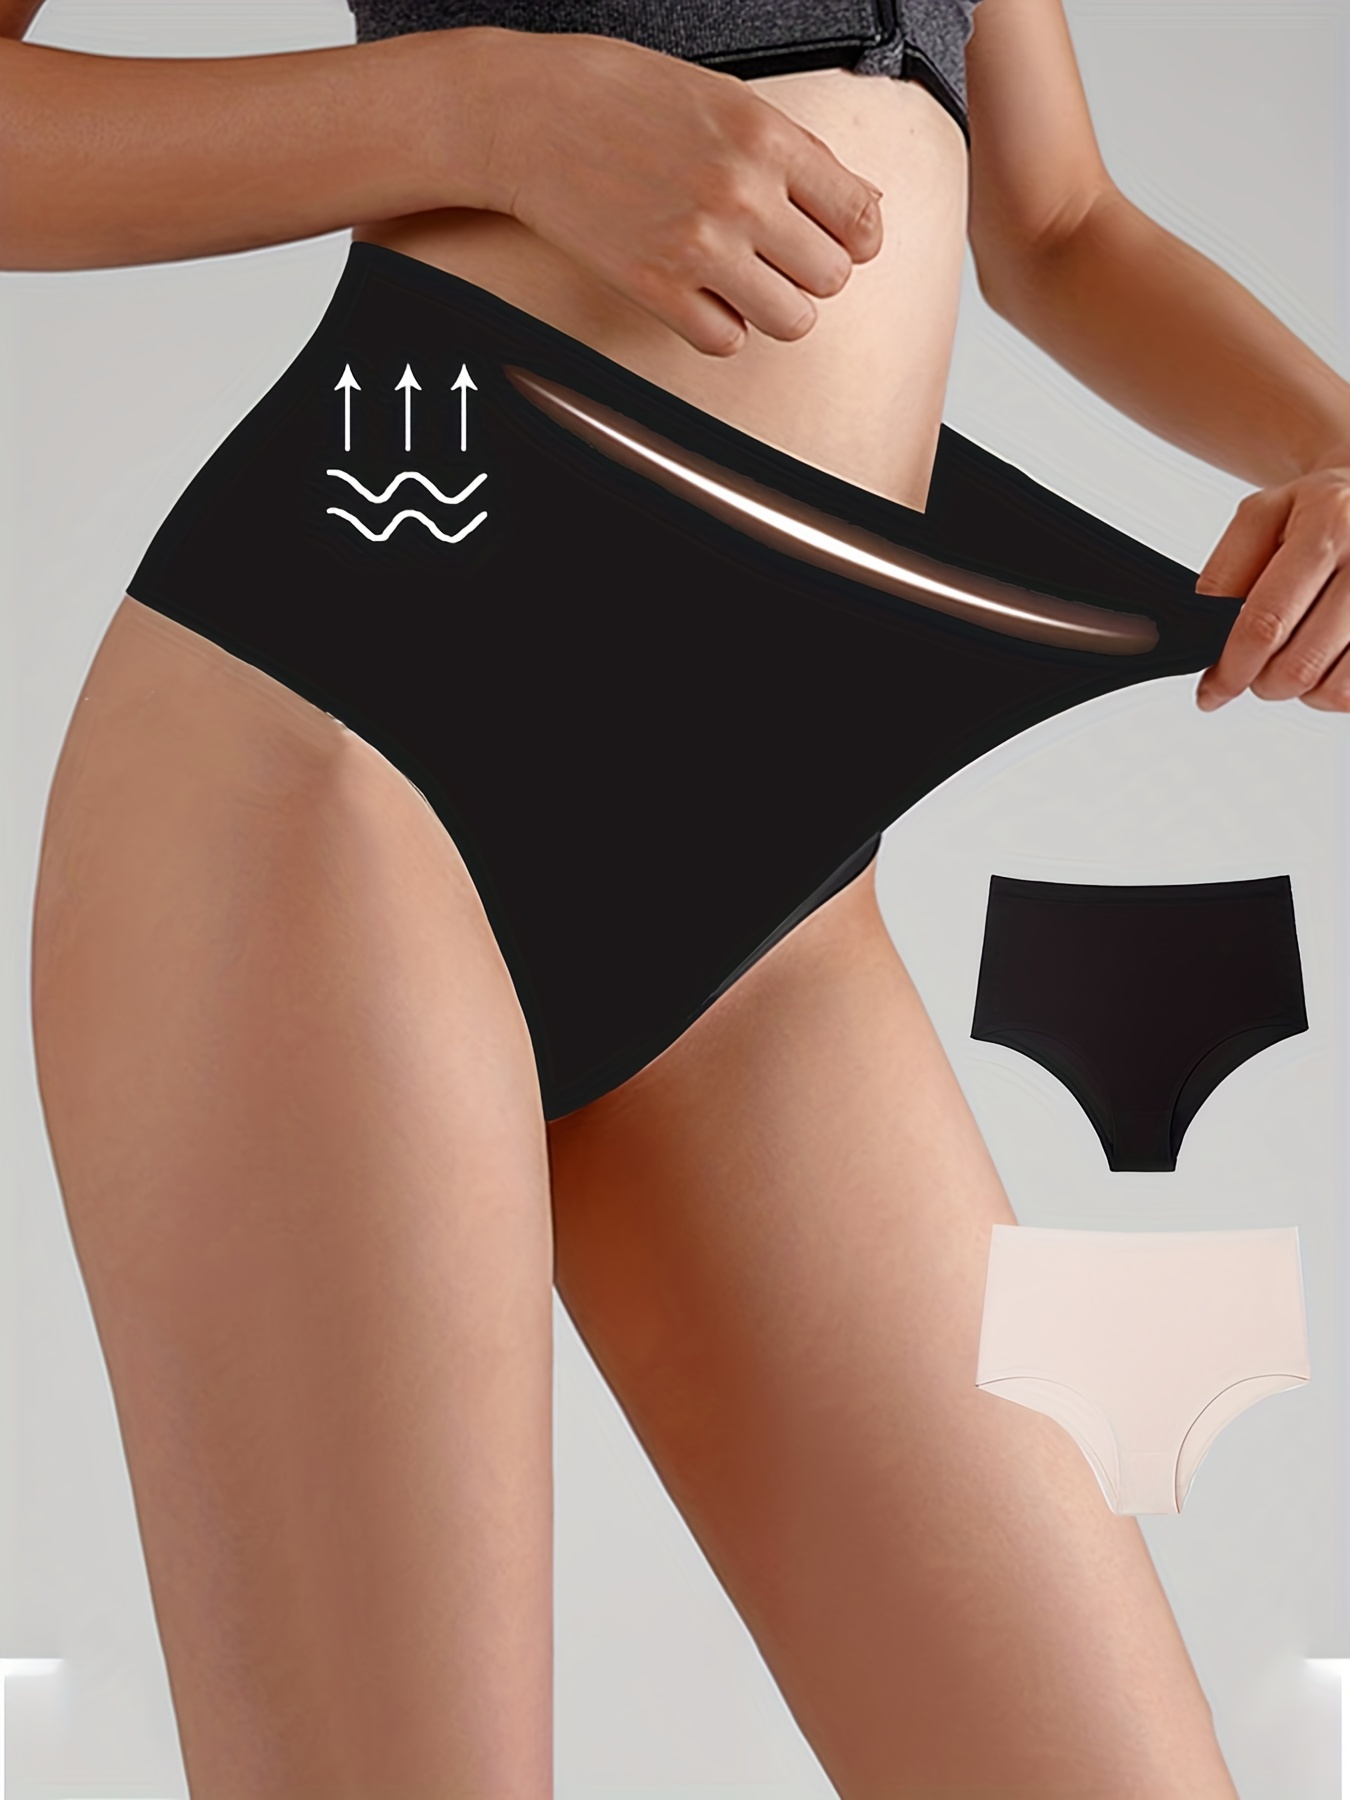 Buy wirarpa Ladies Underwear Cotton Full Briefs High Waist